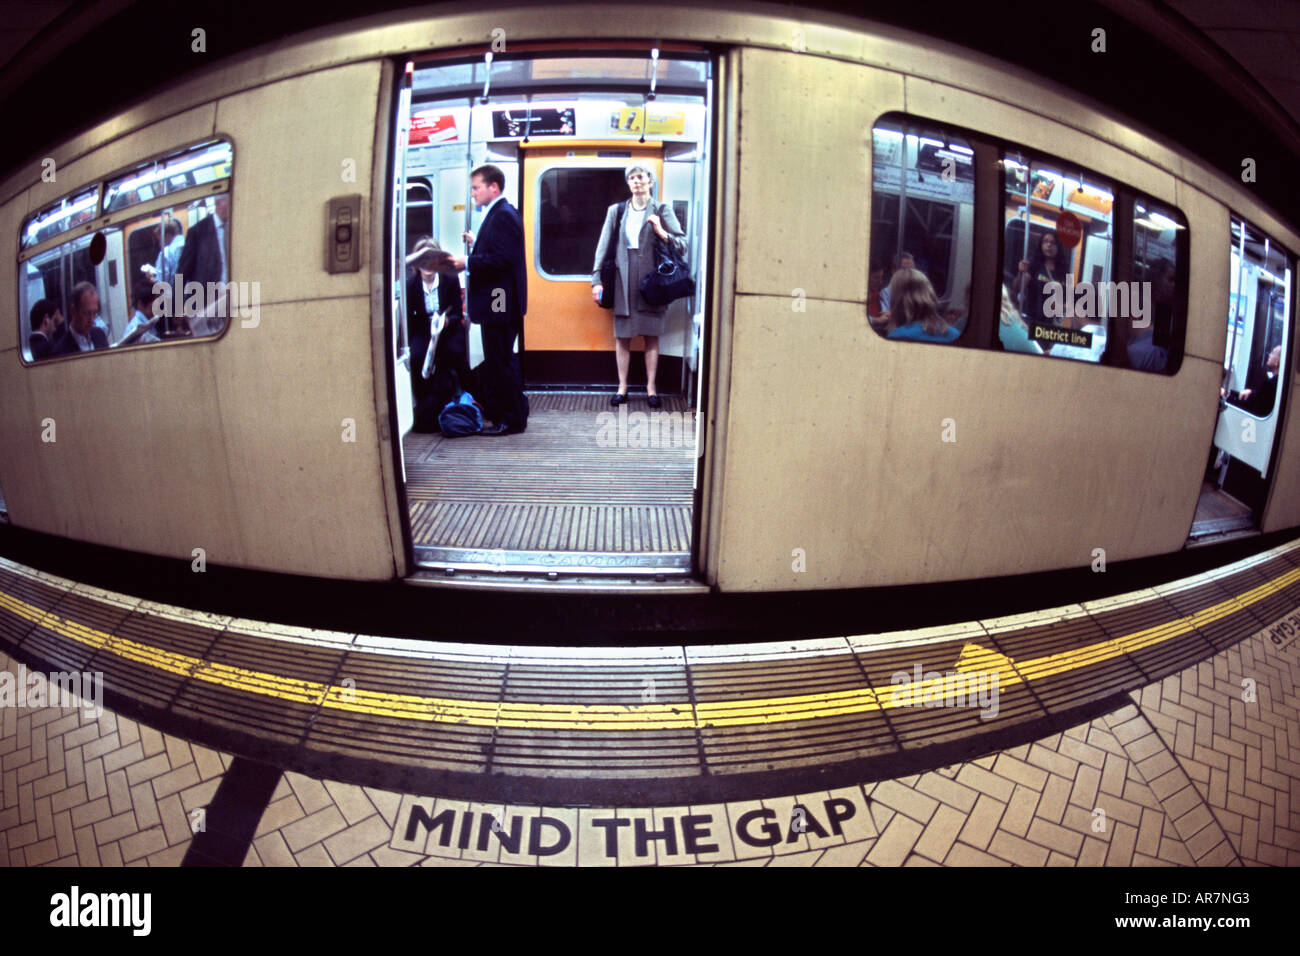 District Line u-Bahn auf einem Bahnsteig in London. Fotografiert mit einem Fischaugen-Objektiv, damit die Verzerrung. Stockfoto